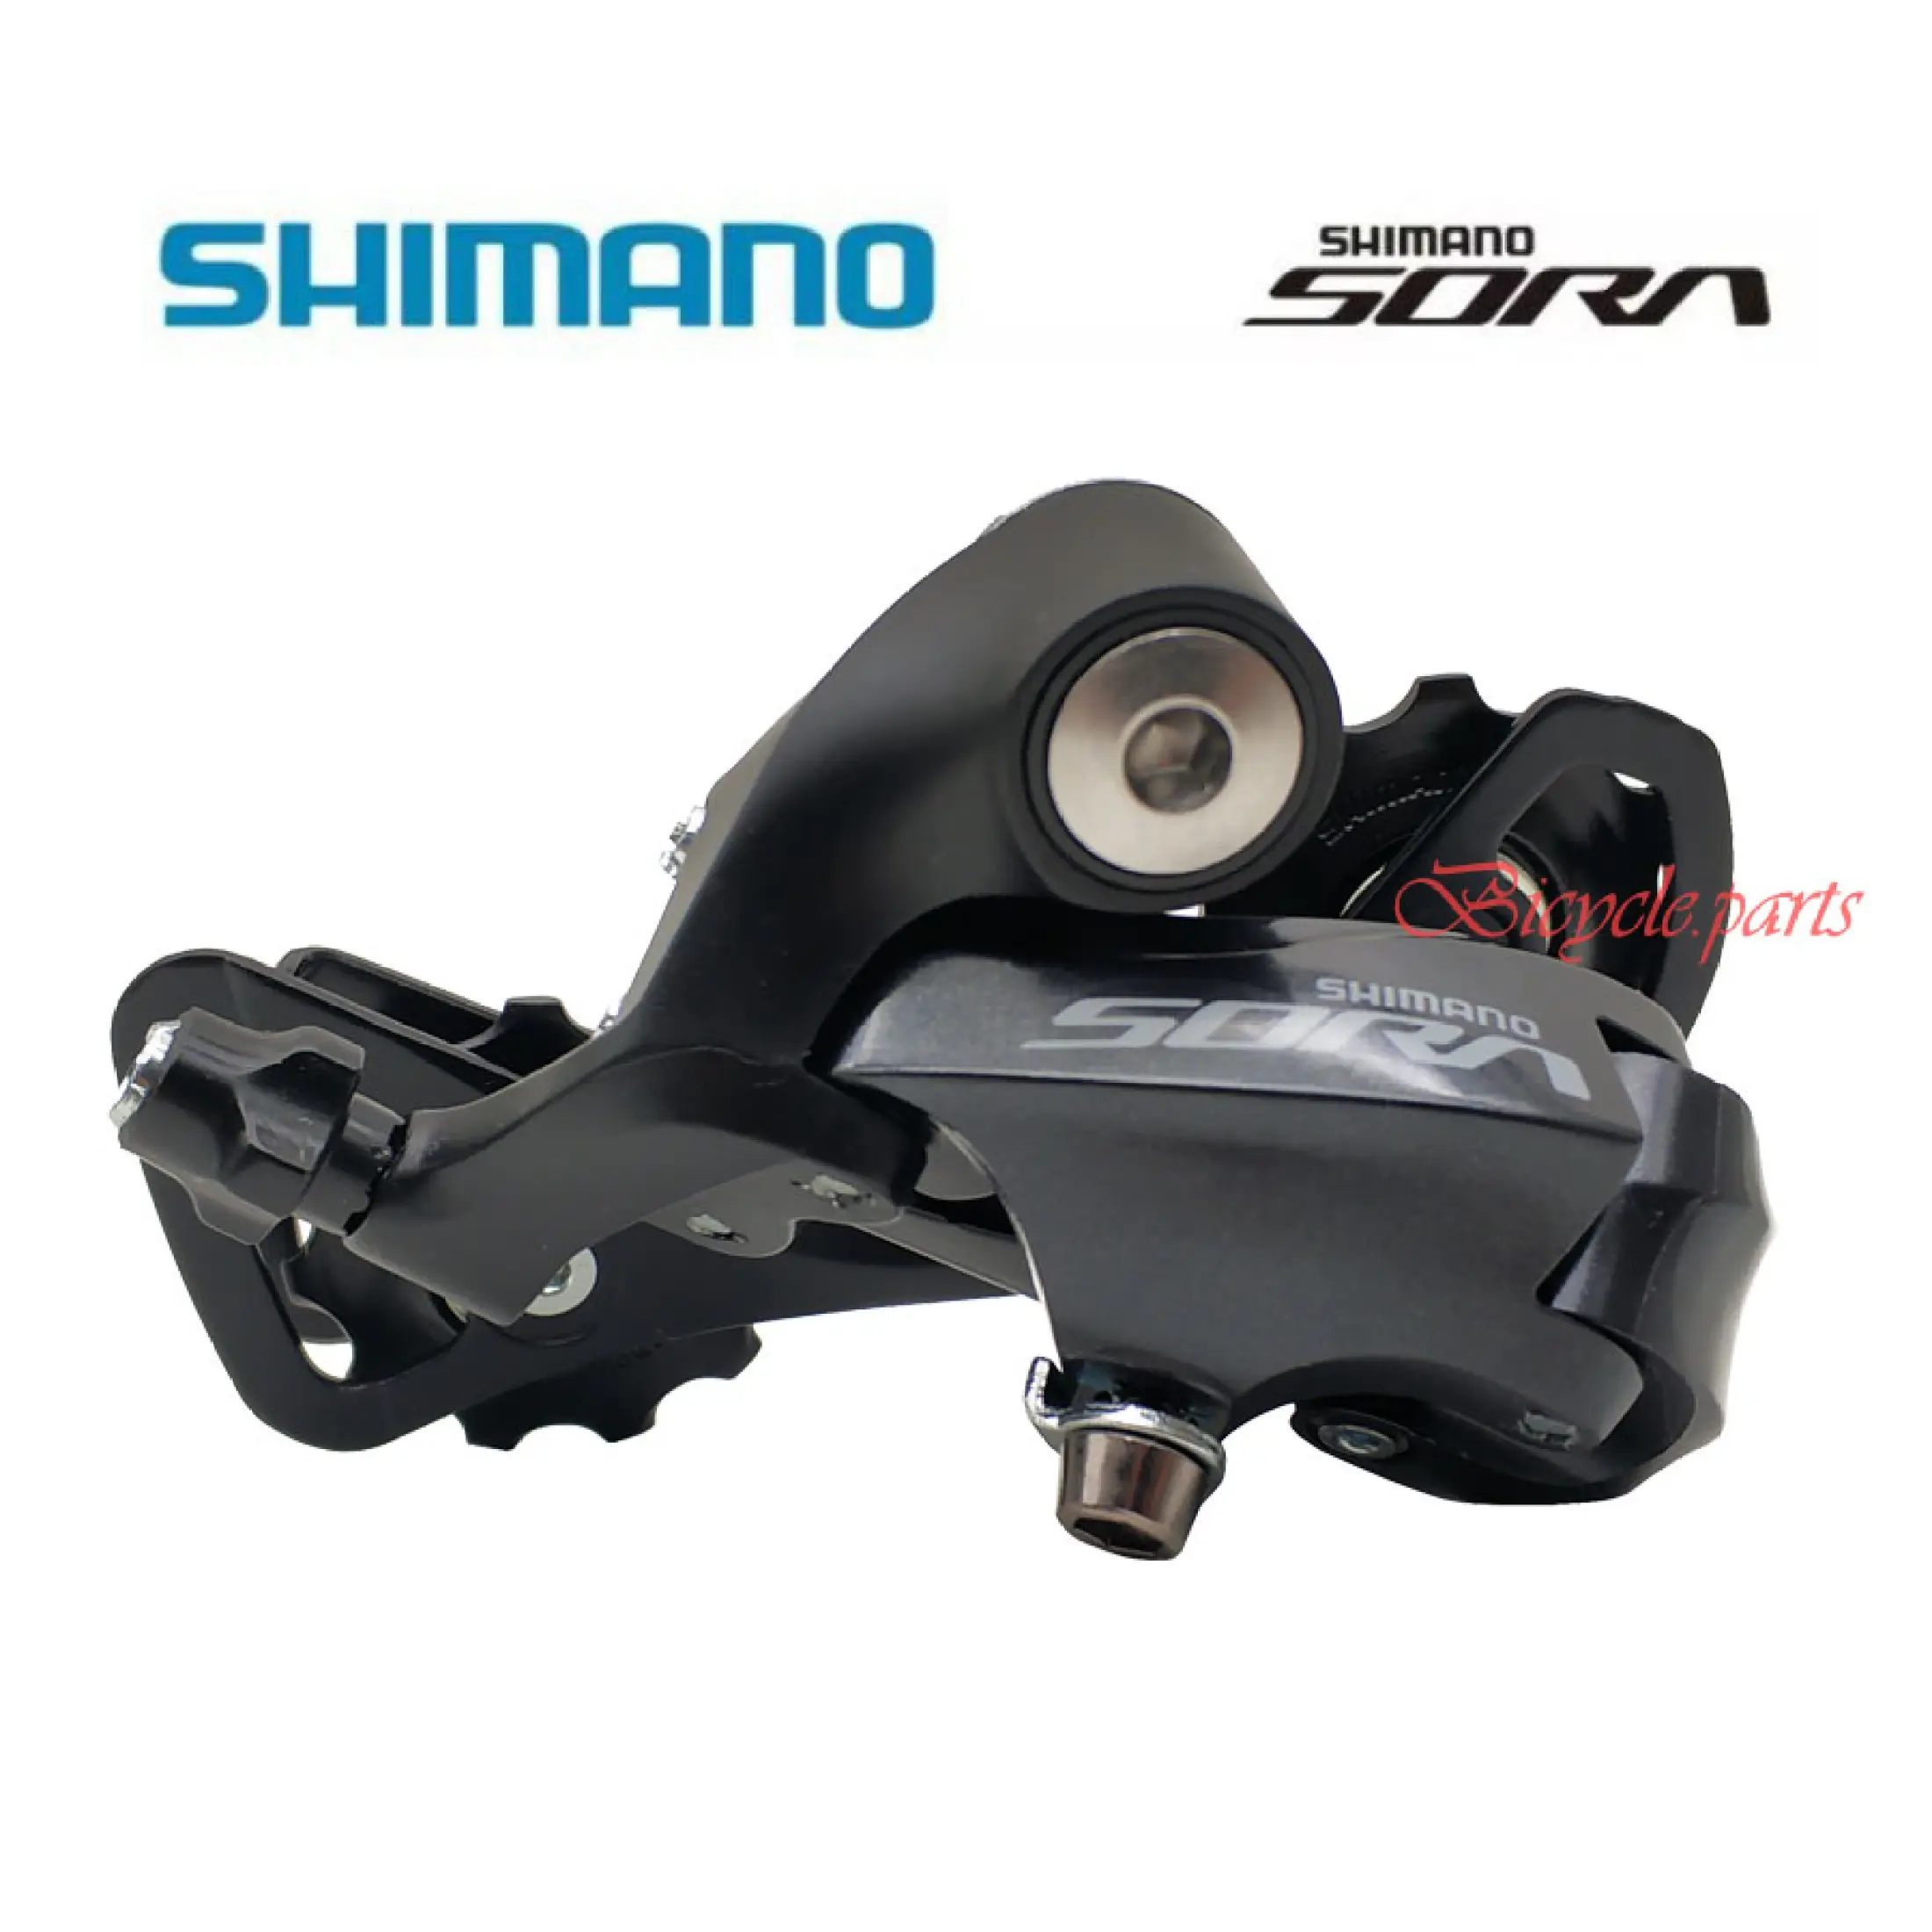 shimano 9 speed rear derailleur road bike